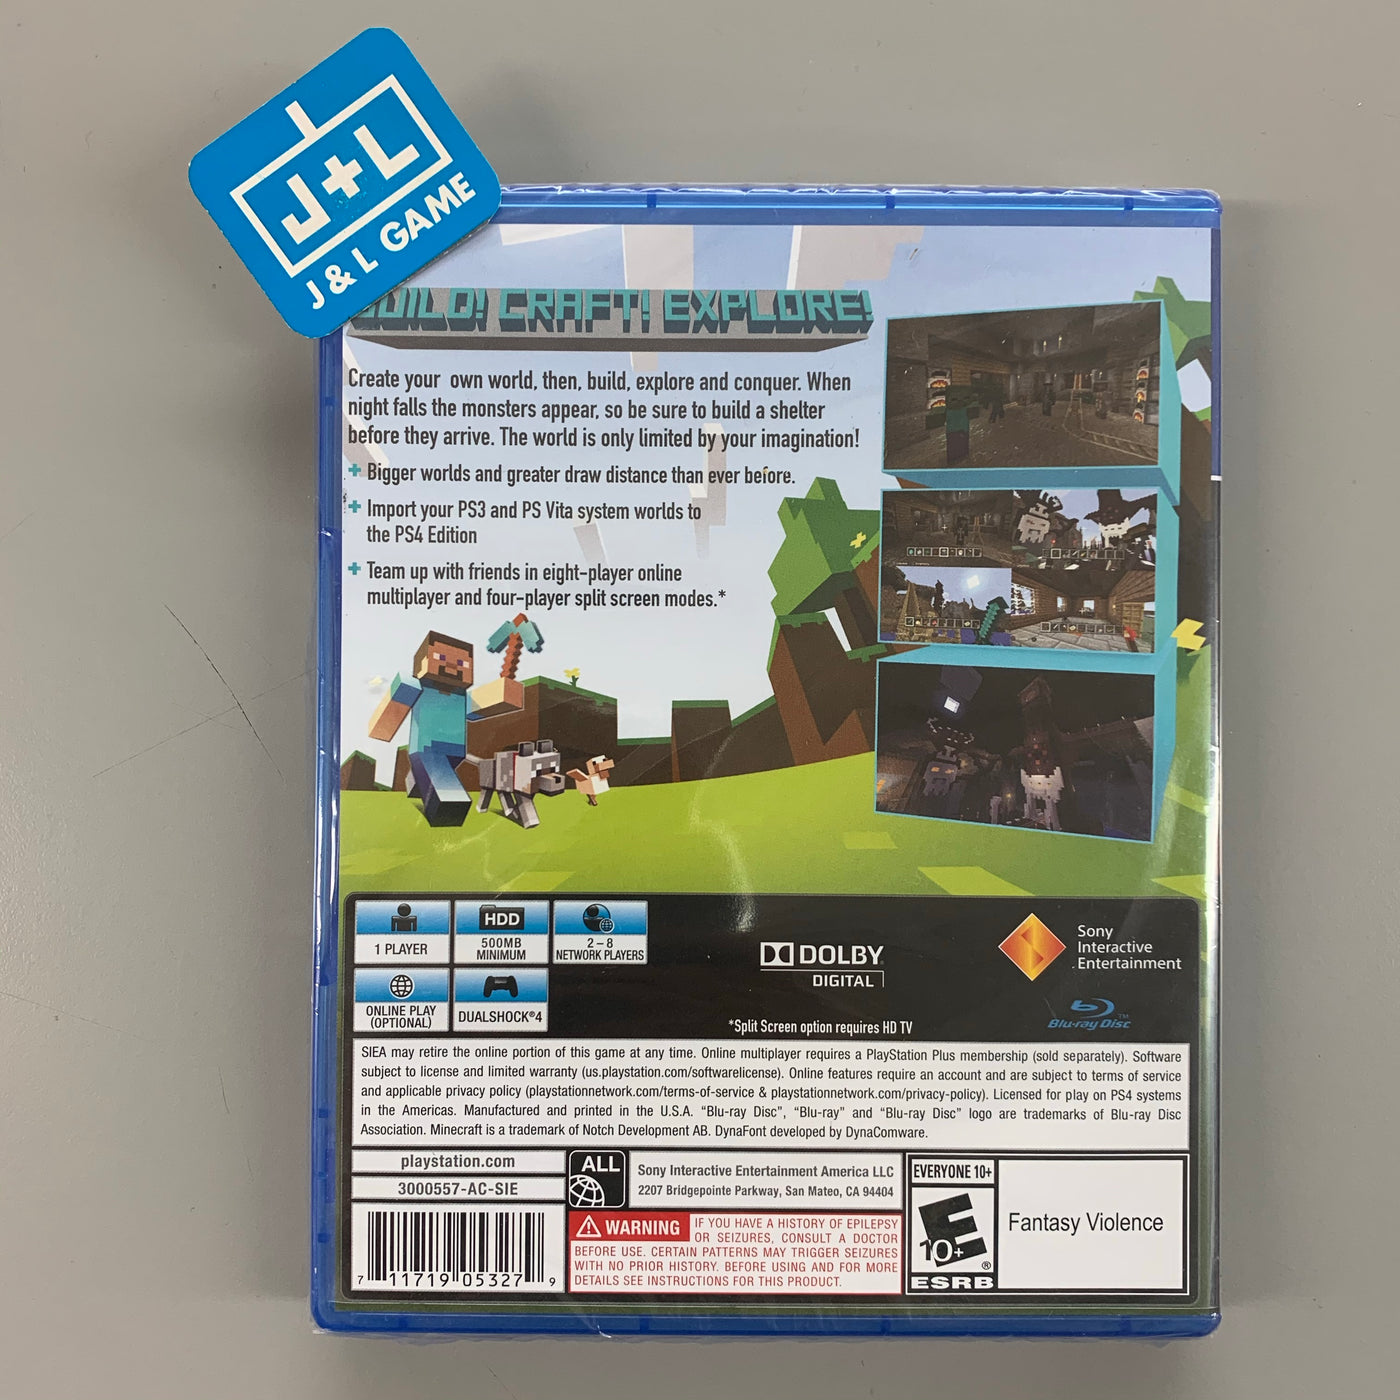 Minecraft: PlayStation 4 Edition [PlayStation 4 PS4, Sandbox World Building]